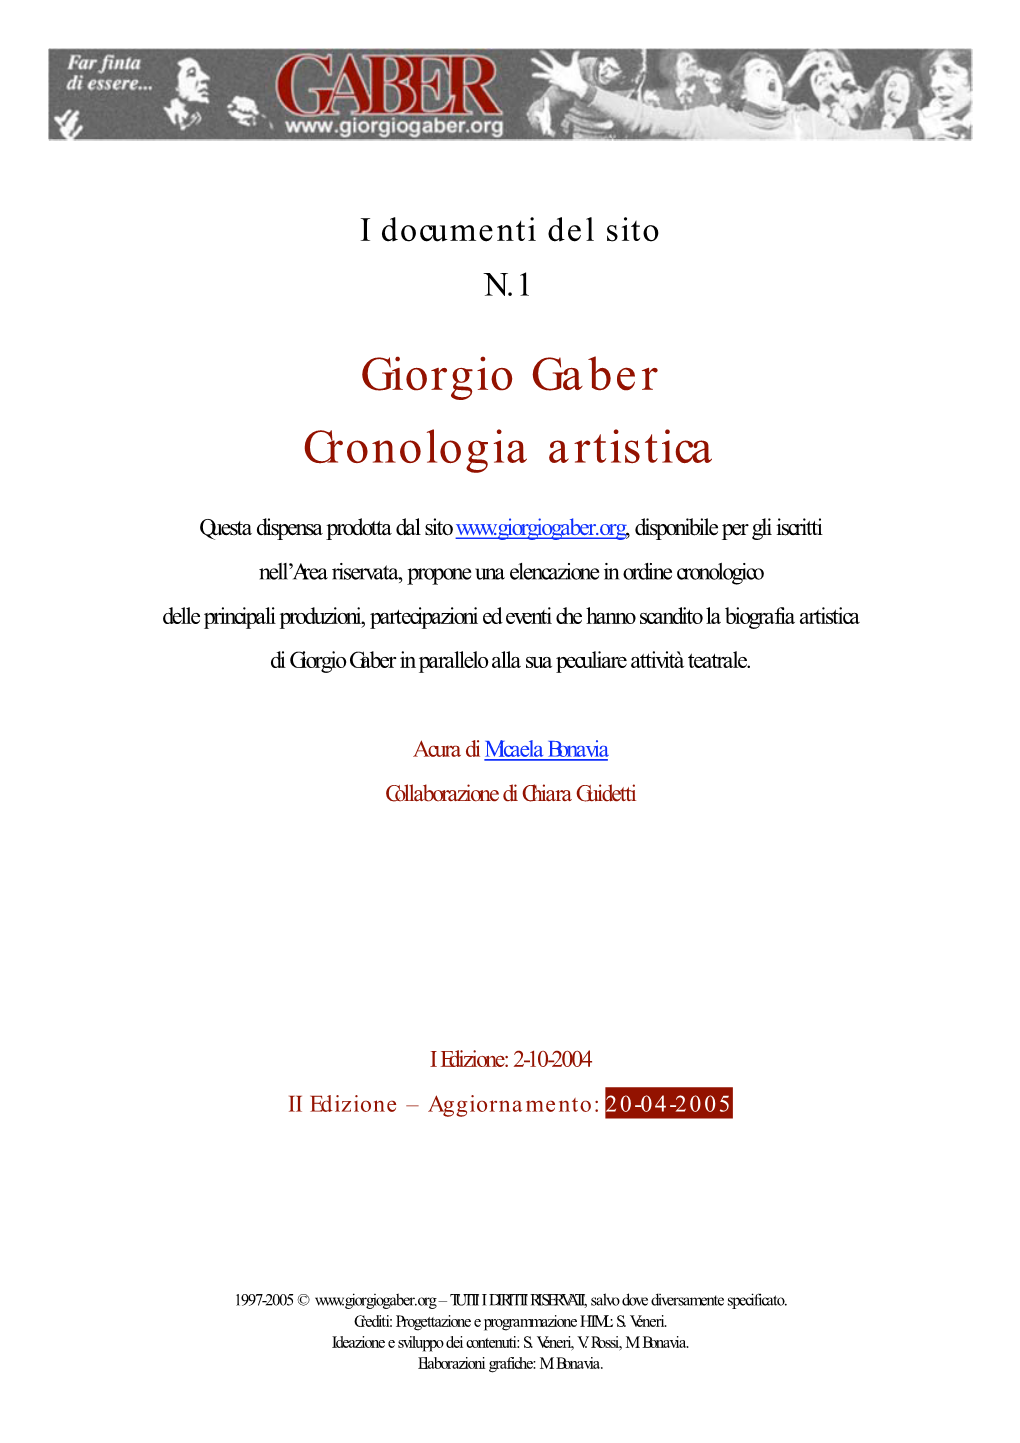 Giorgio Gaber Cronologia Artistica